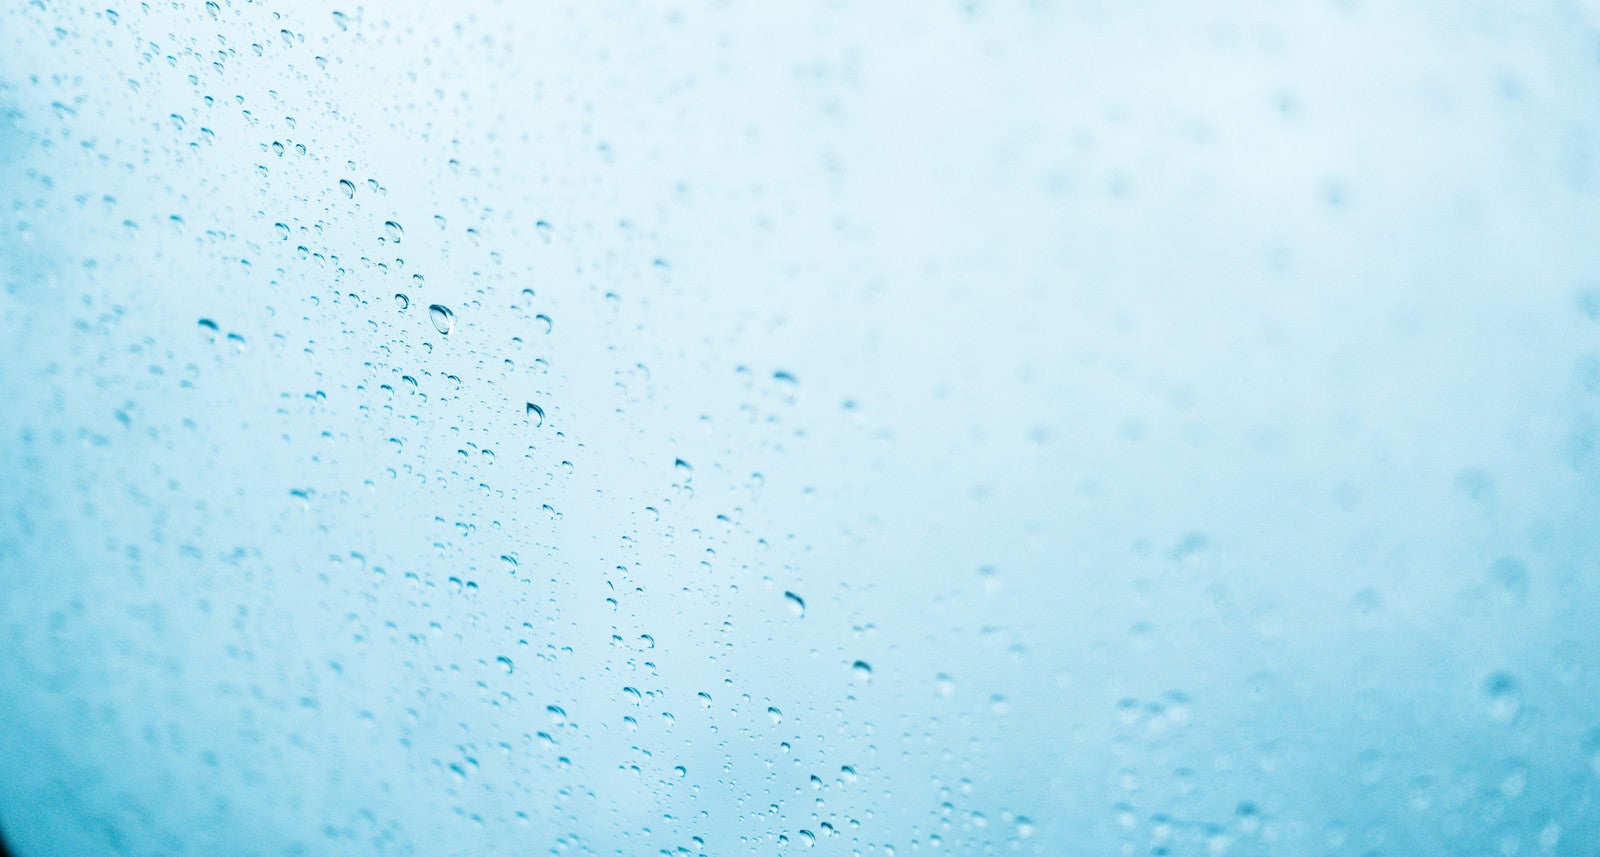 「窓ガラスの雨粒」の写真